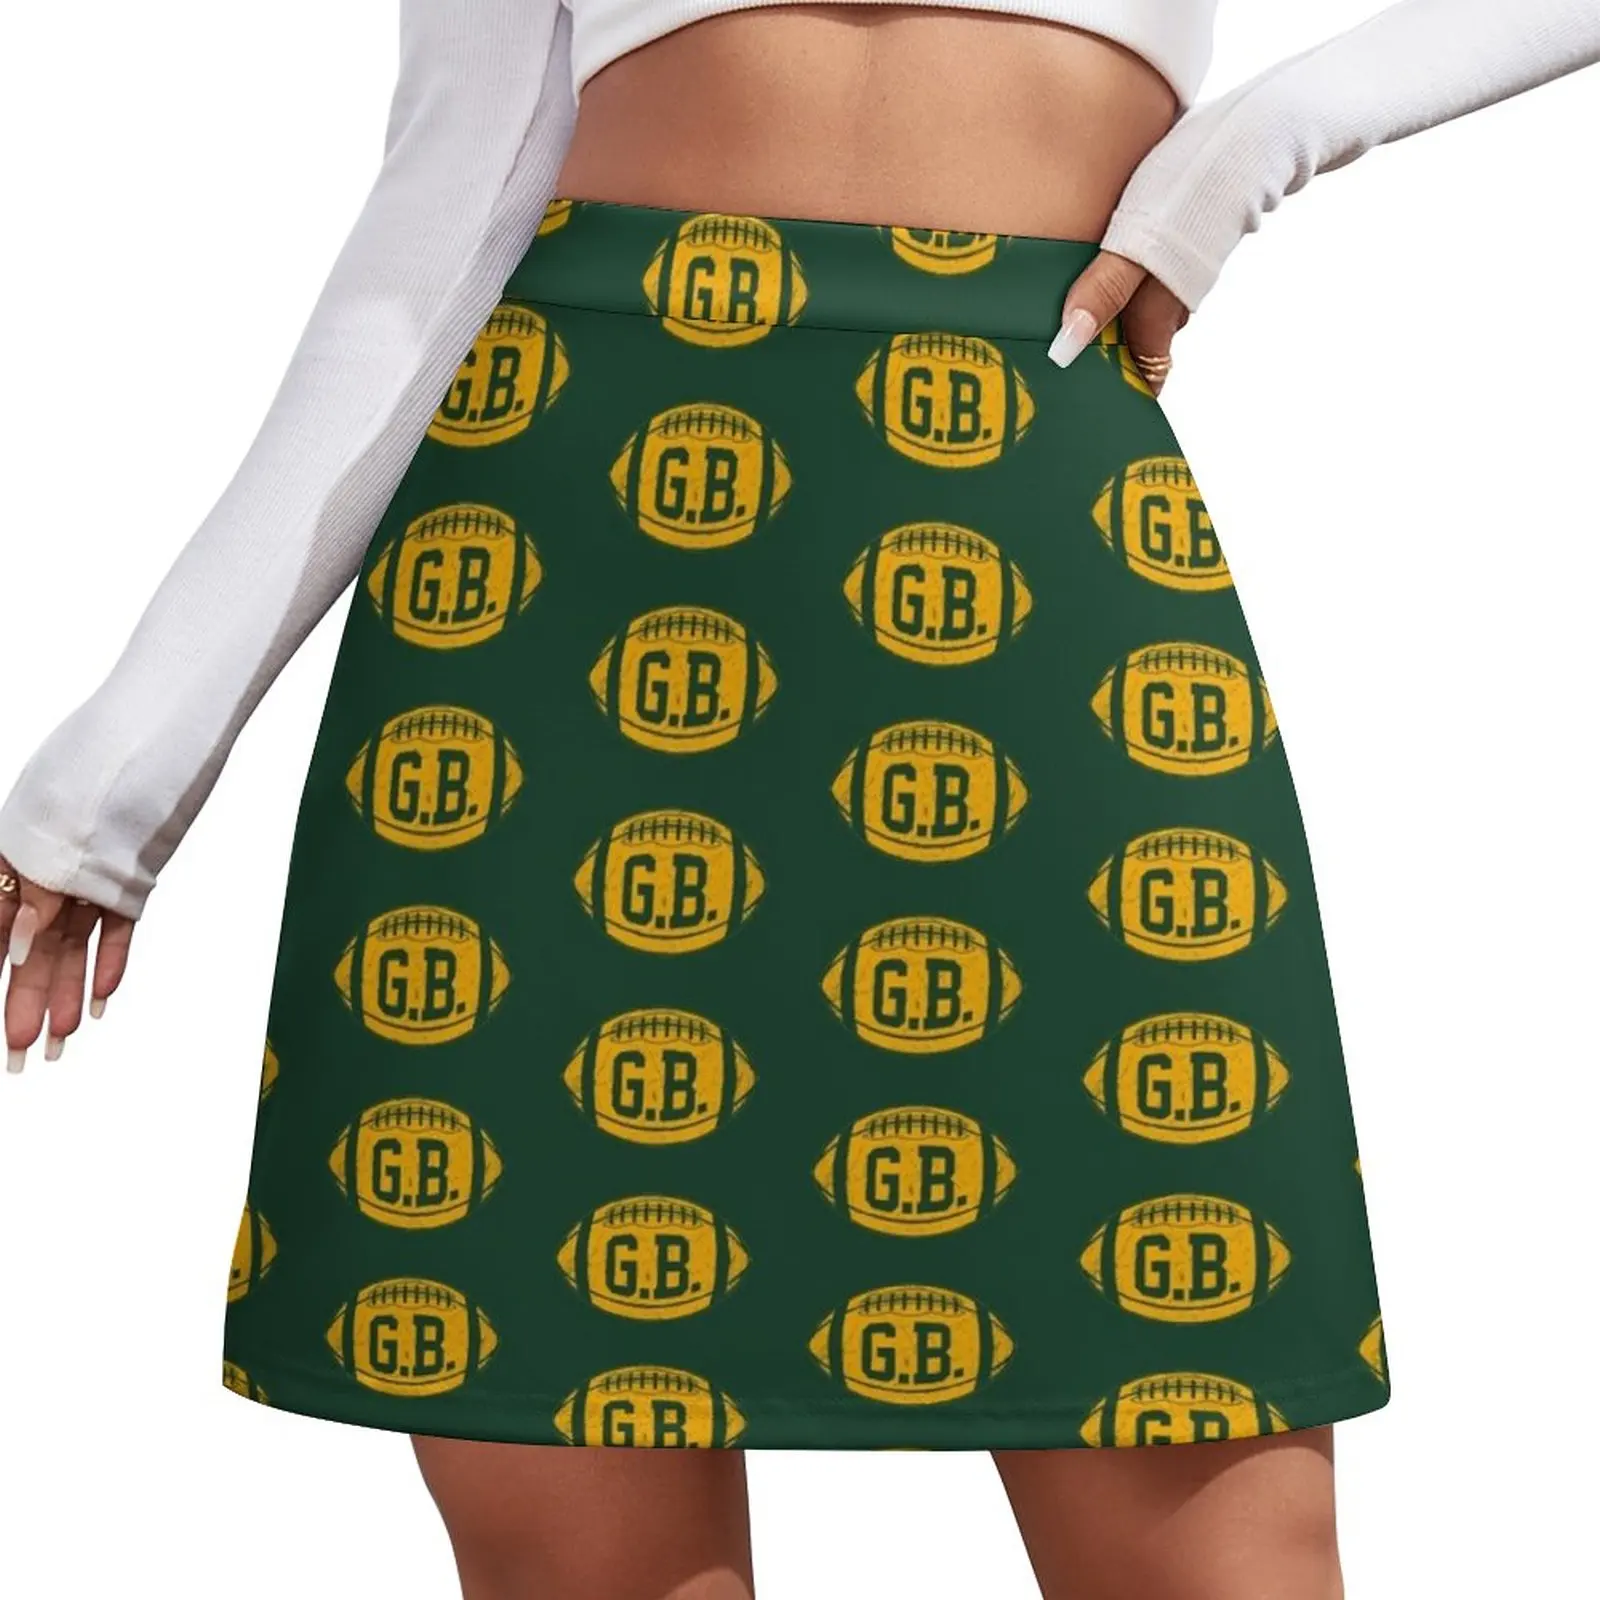 GB Retro Football - Green Mini Skirt elegant social women's skirts korean summer clothes summer skirts skirt sets social